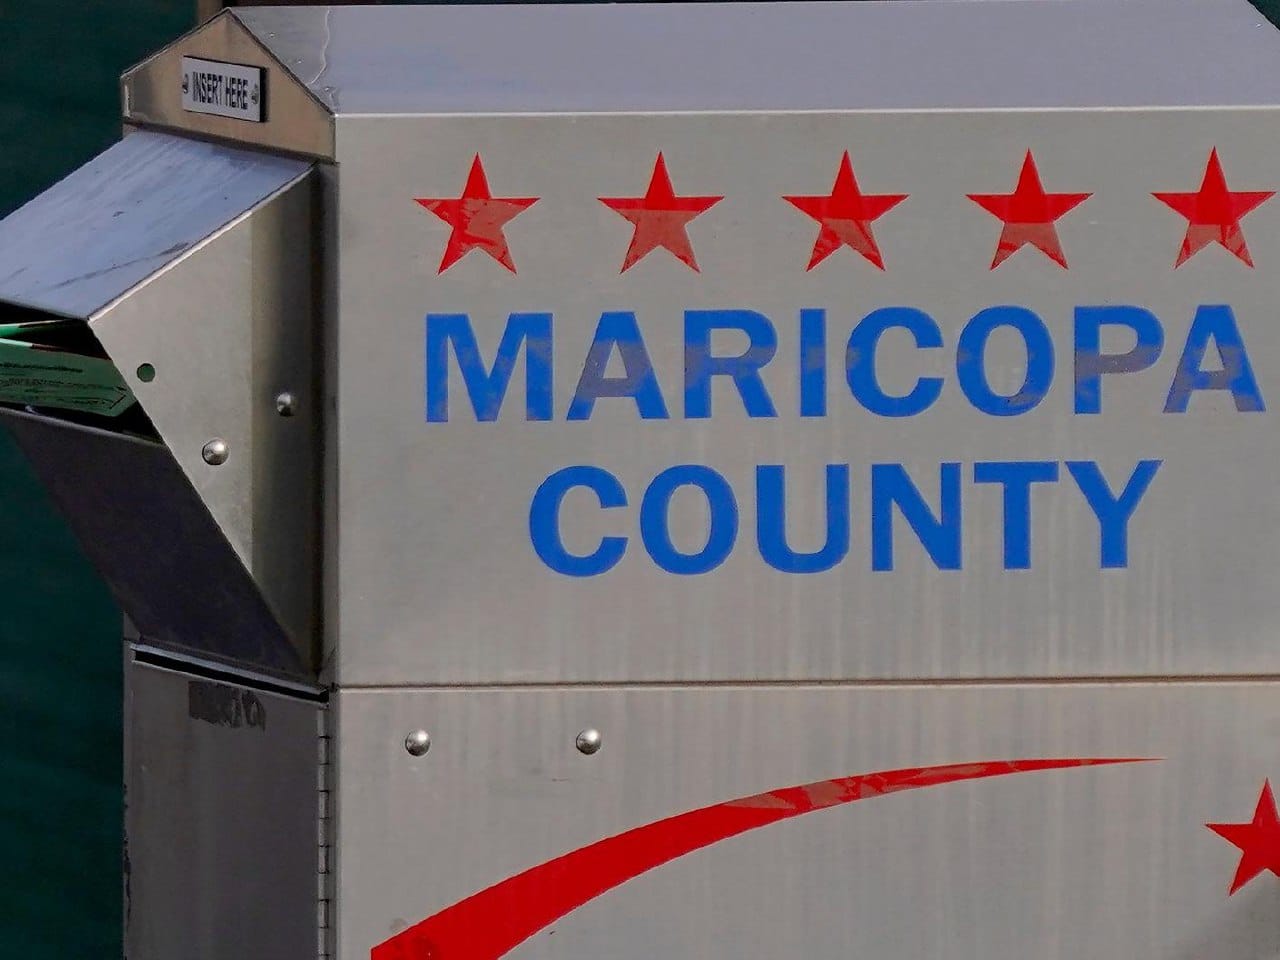 EEUU: Condado de Maricopa publicará resultados adicionales esta noche